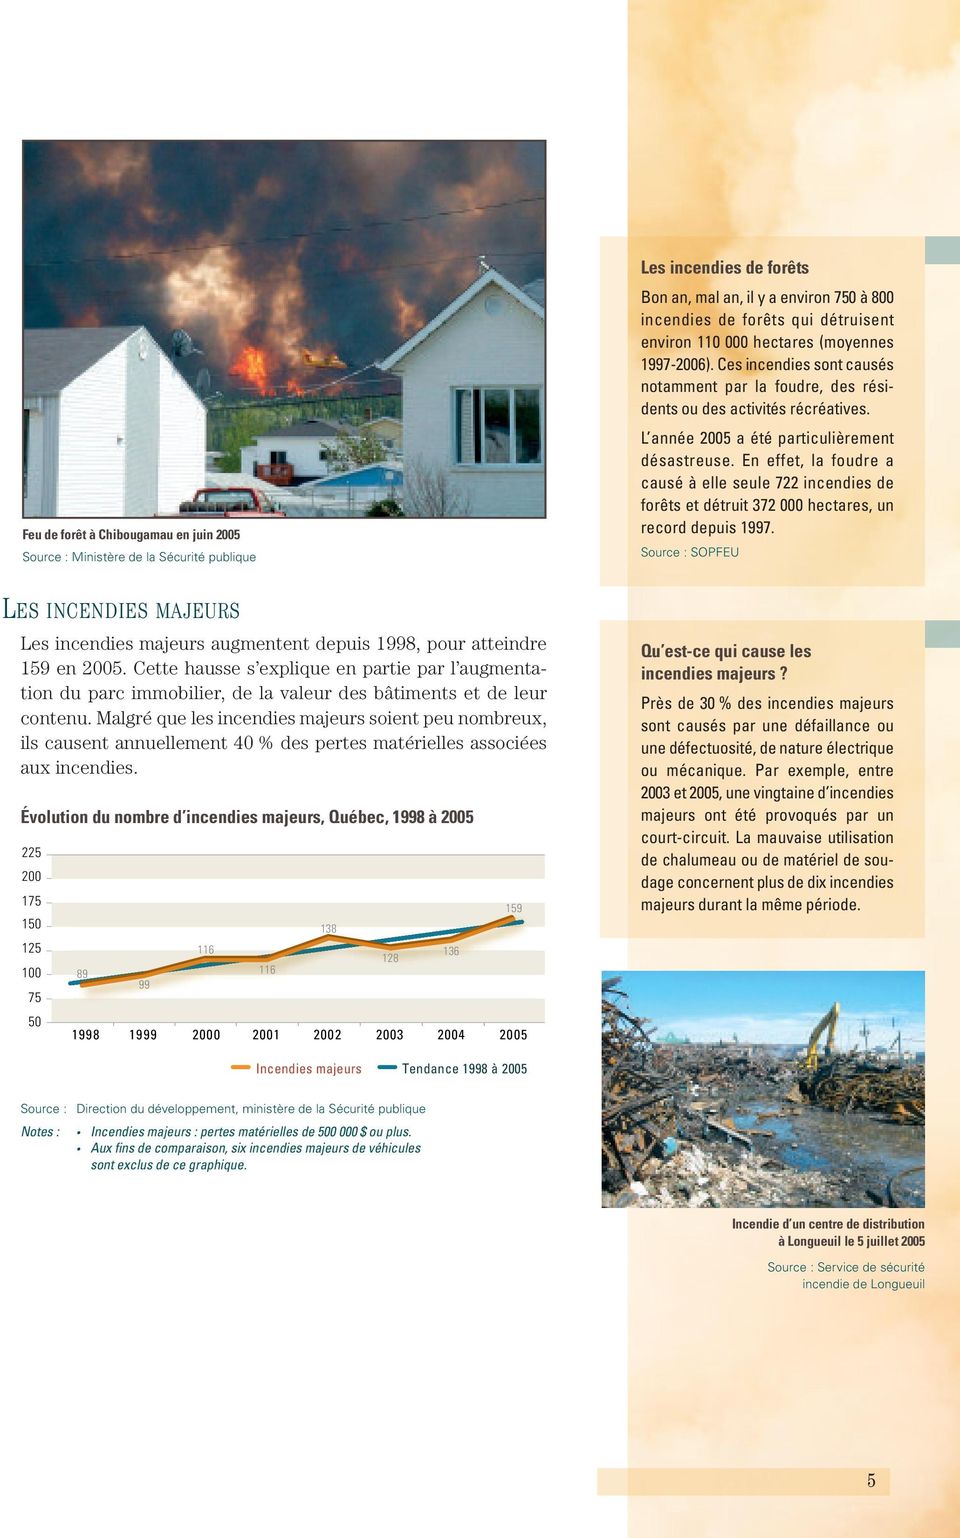 En effet, la foudre a causé à elle seule 722 incendies de forêts et détruit 372 000 hectares, un record depuis 1997.